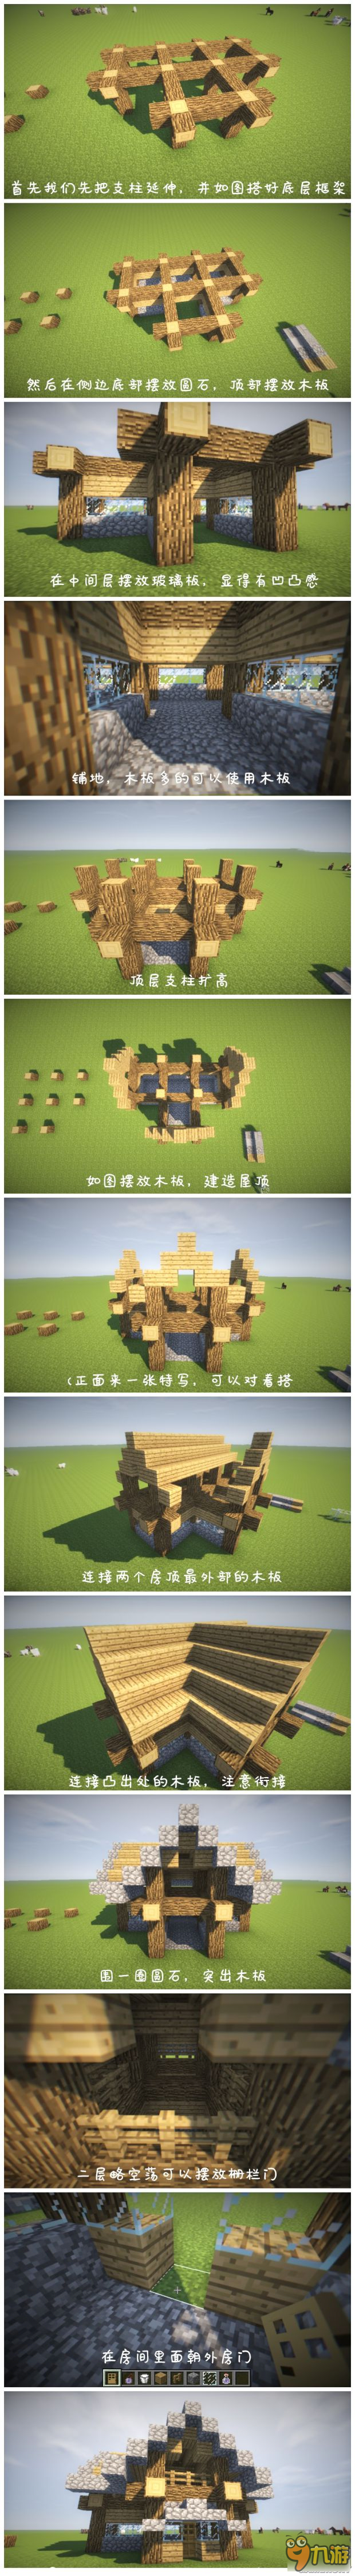 《我的世界》生存模式实用木屋建造教程 生存小木屋建造